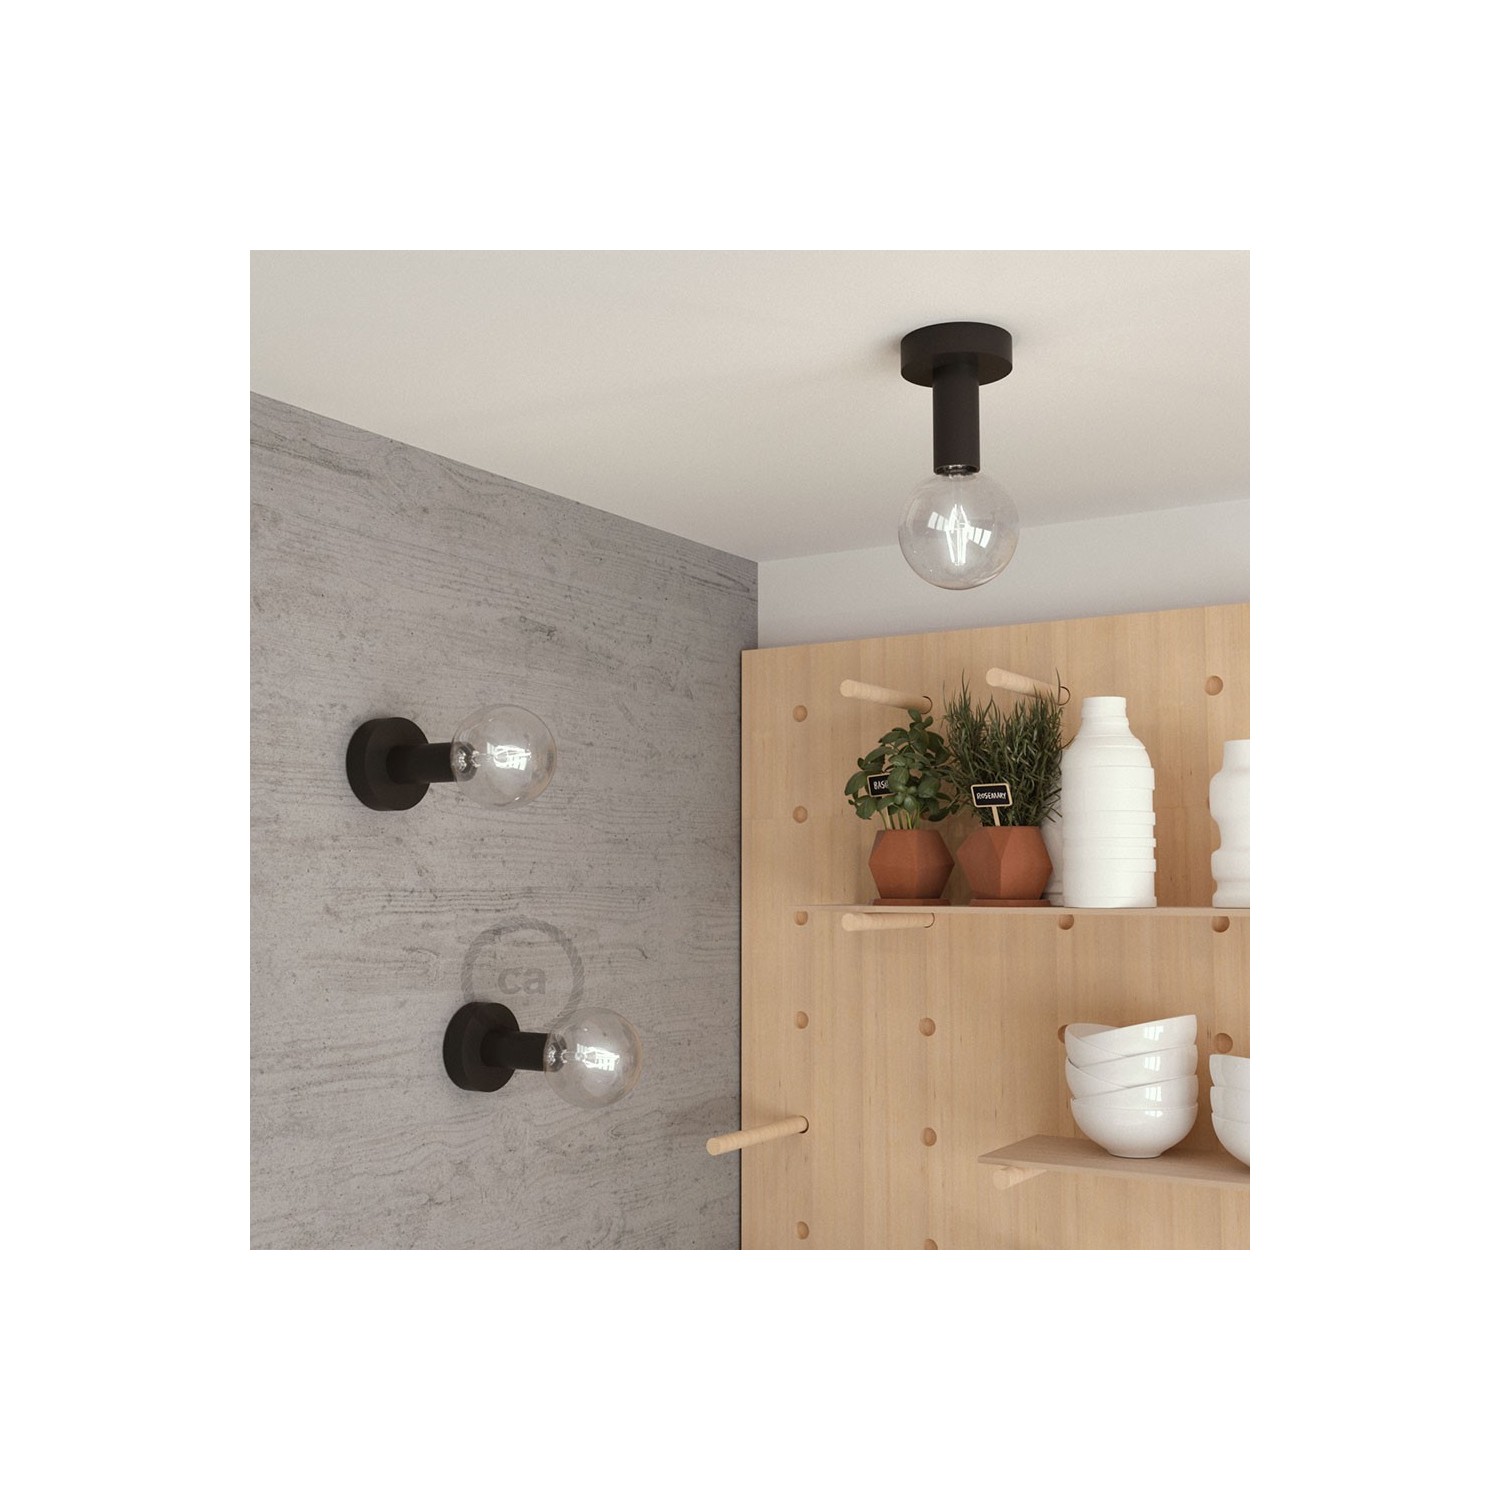 Fermaluce Monochrome, obojana drvena reflektor lampa za zid ili strop duljine 14,2 cm